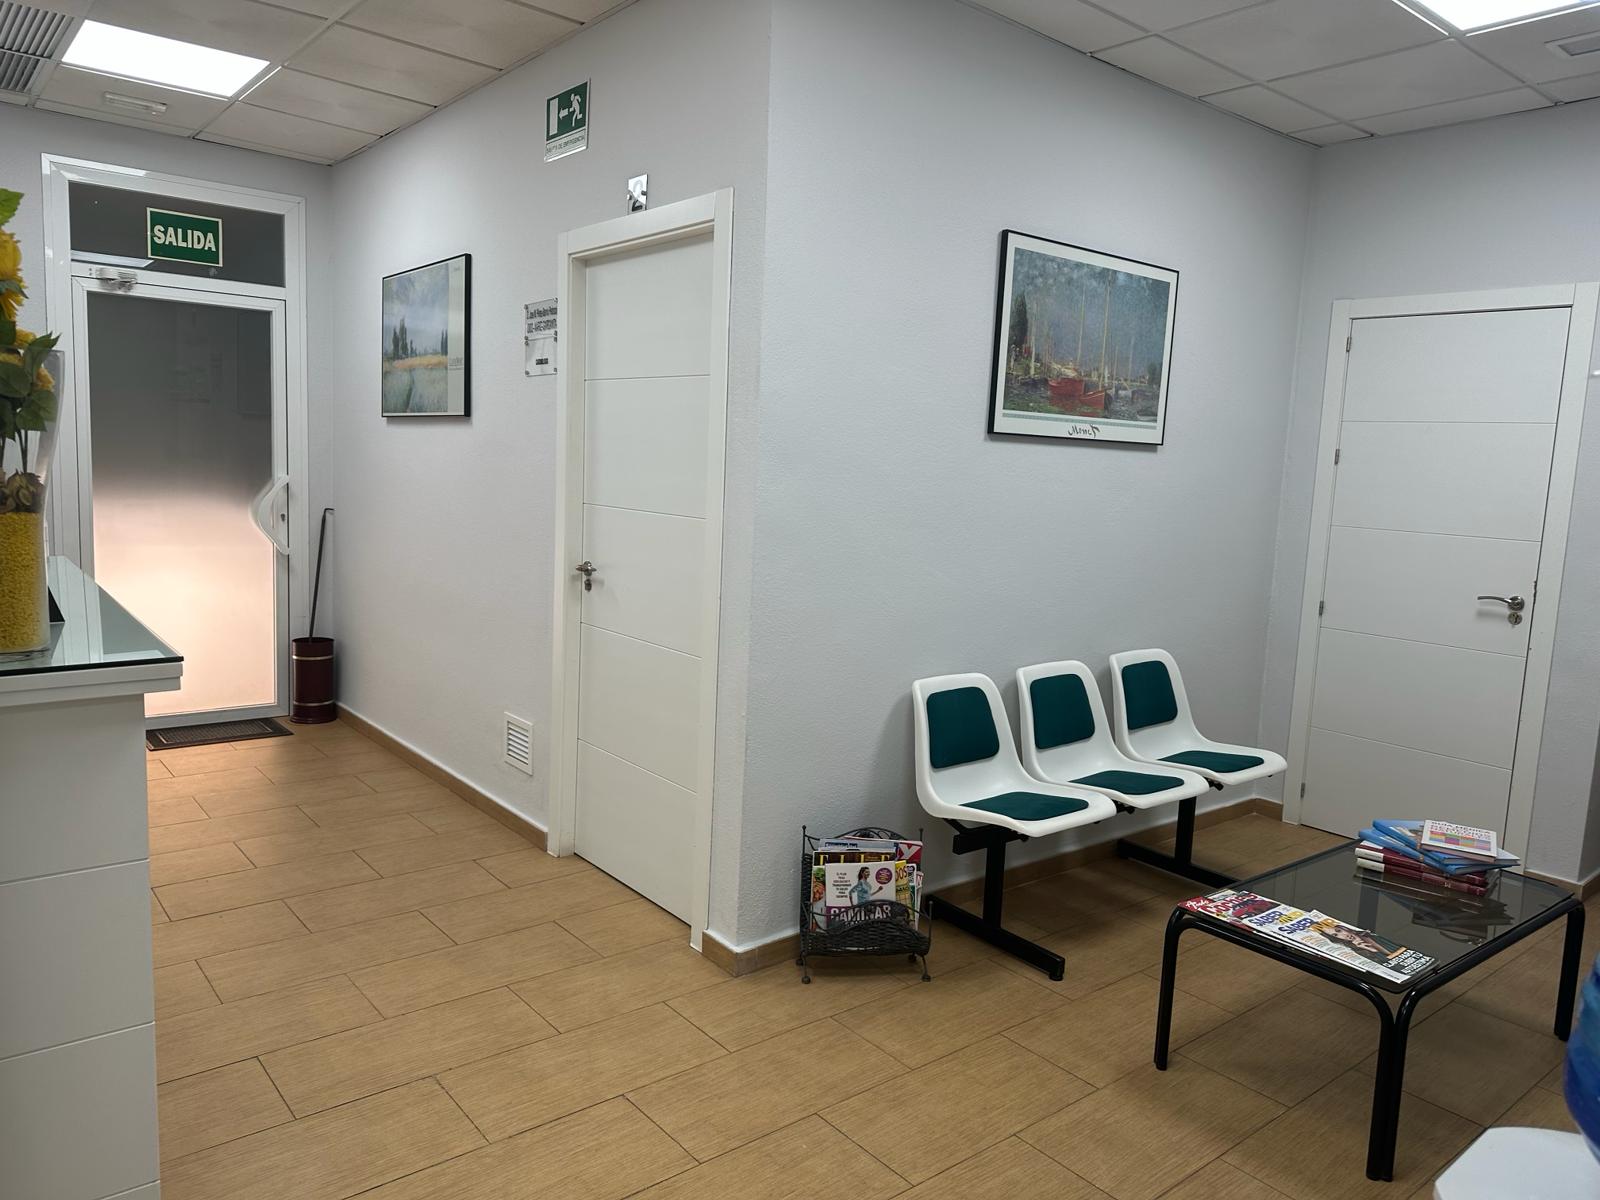 Sala de espera Andújar Salud